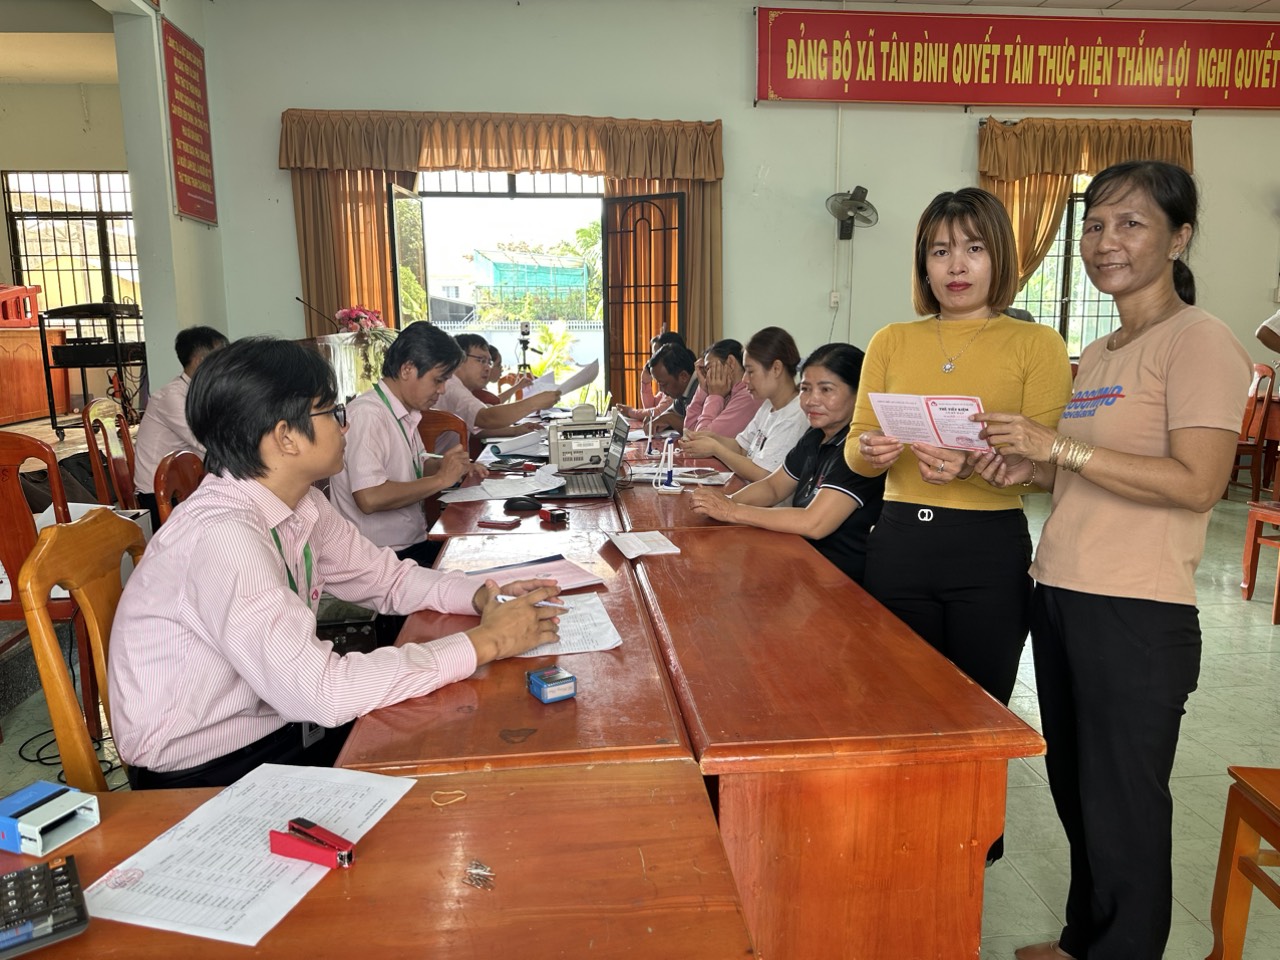 Bà Nguyễn Thị Thu Phượng - cán bộ tiêu biểu trong quản lý tín dụng  chính sách xã hội huyện Tân Biên